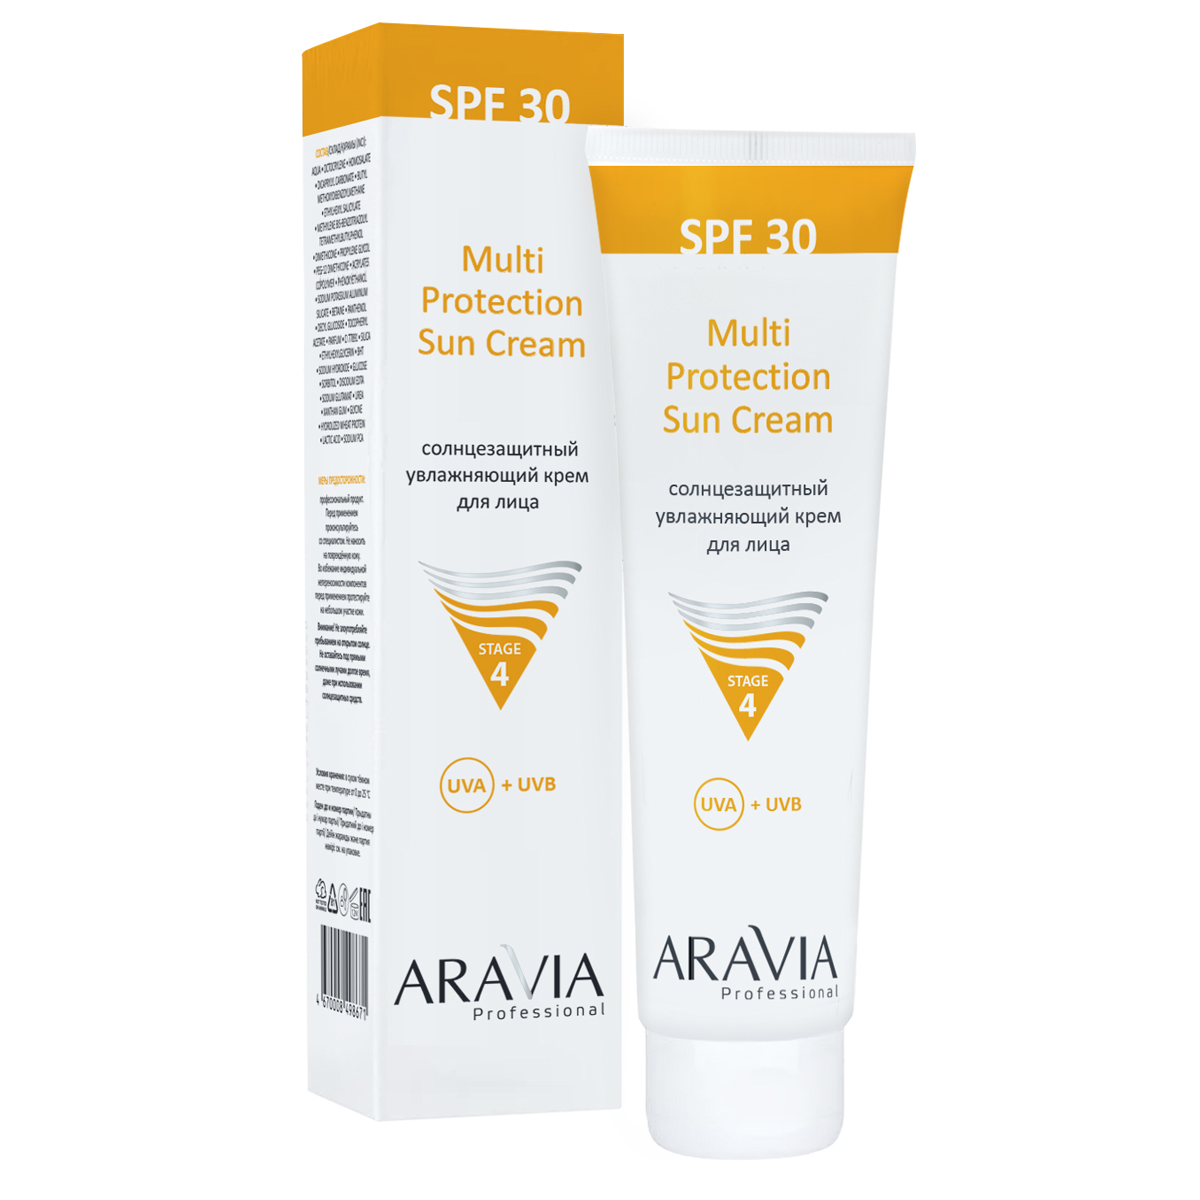 Аравия Профессионал Cолнцезащитный увлажняющий крем для лица Multi Protection Sun Cream SPF 30, 100 мл (Aravia Professional, Уход за лицом) фото 0